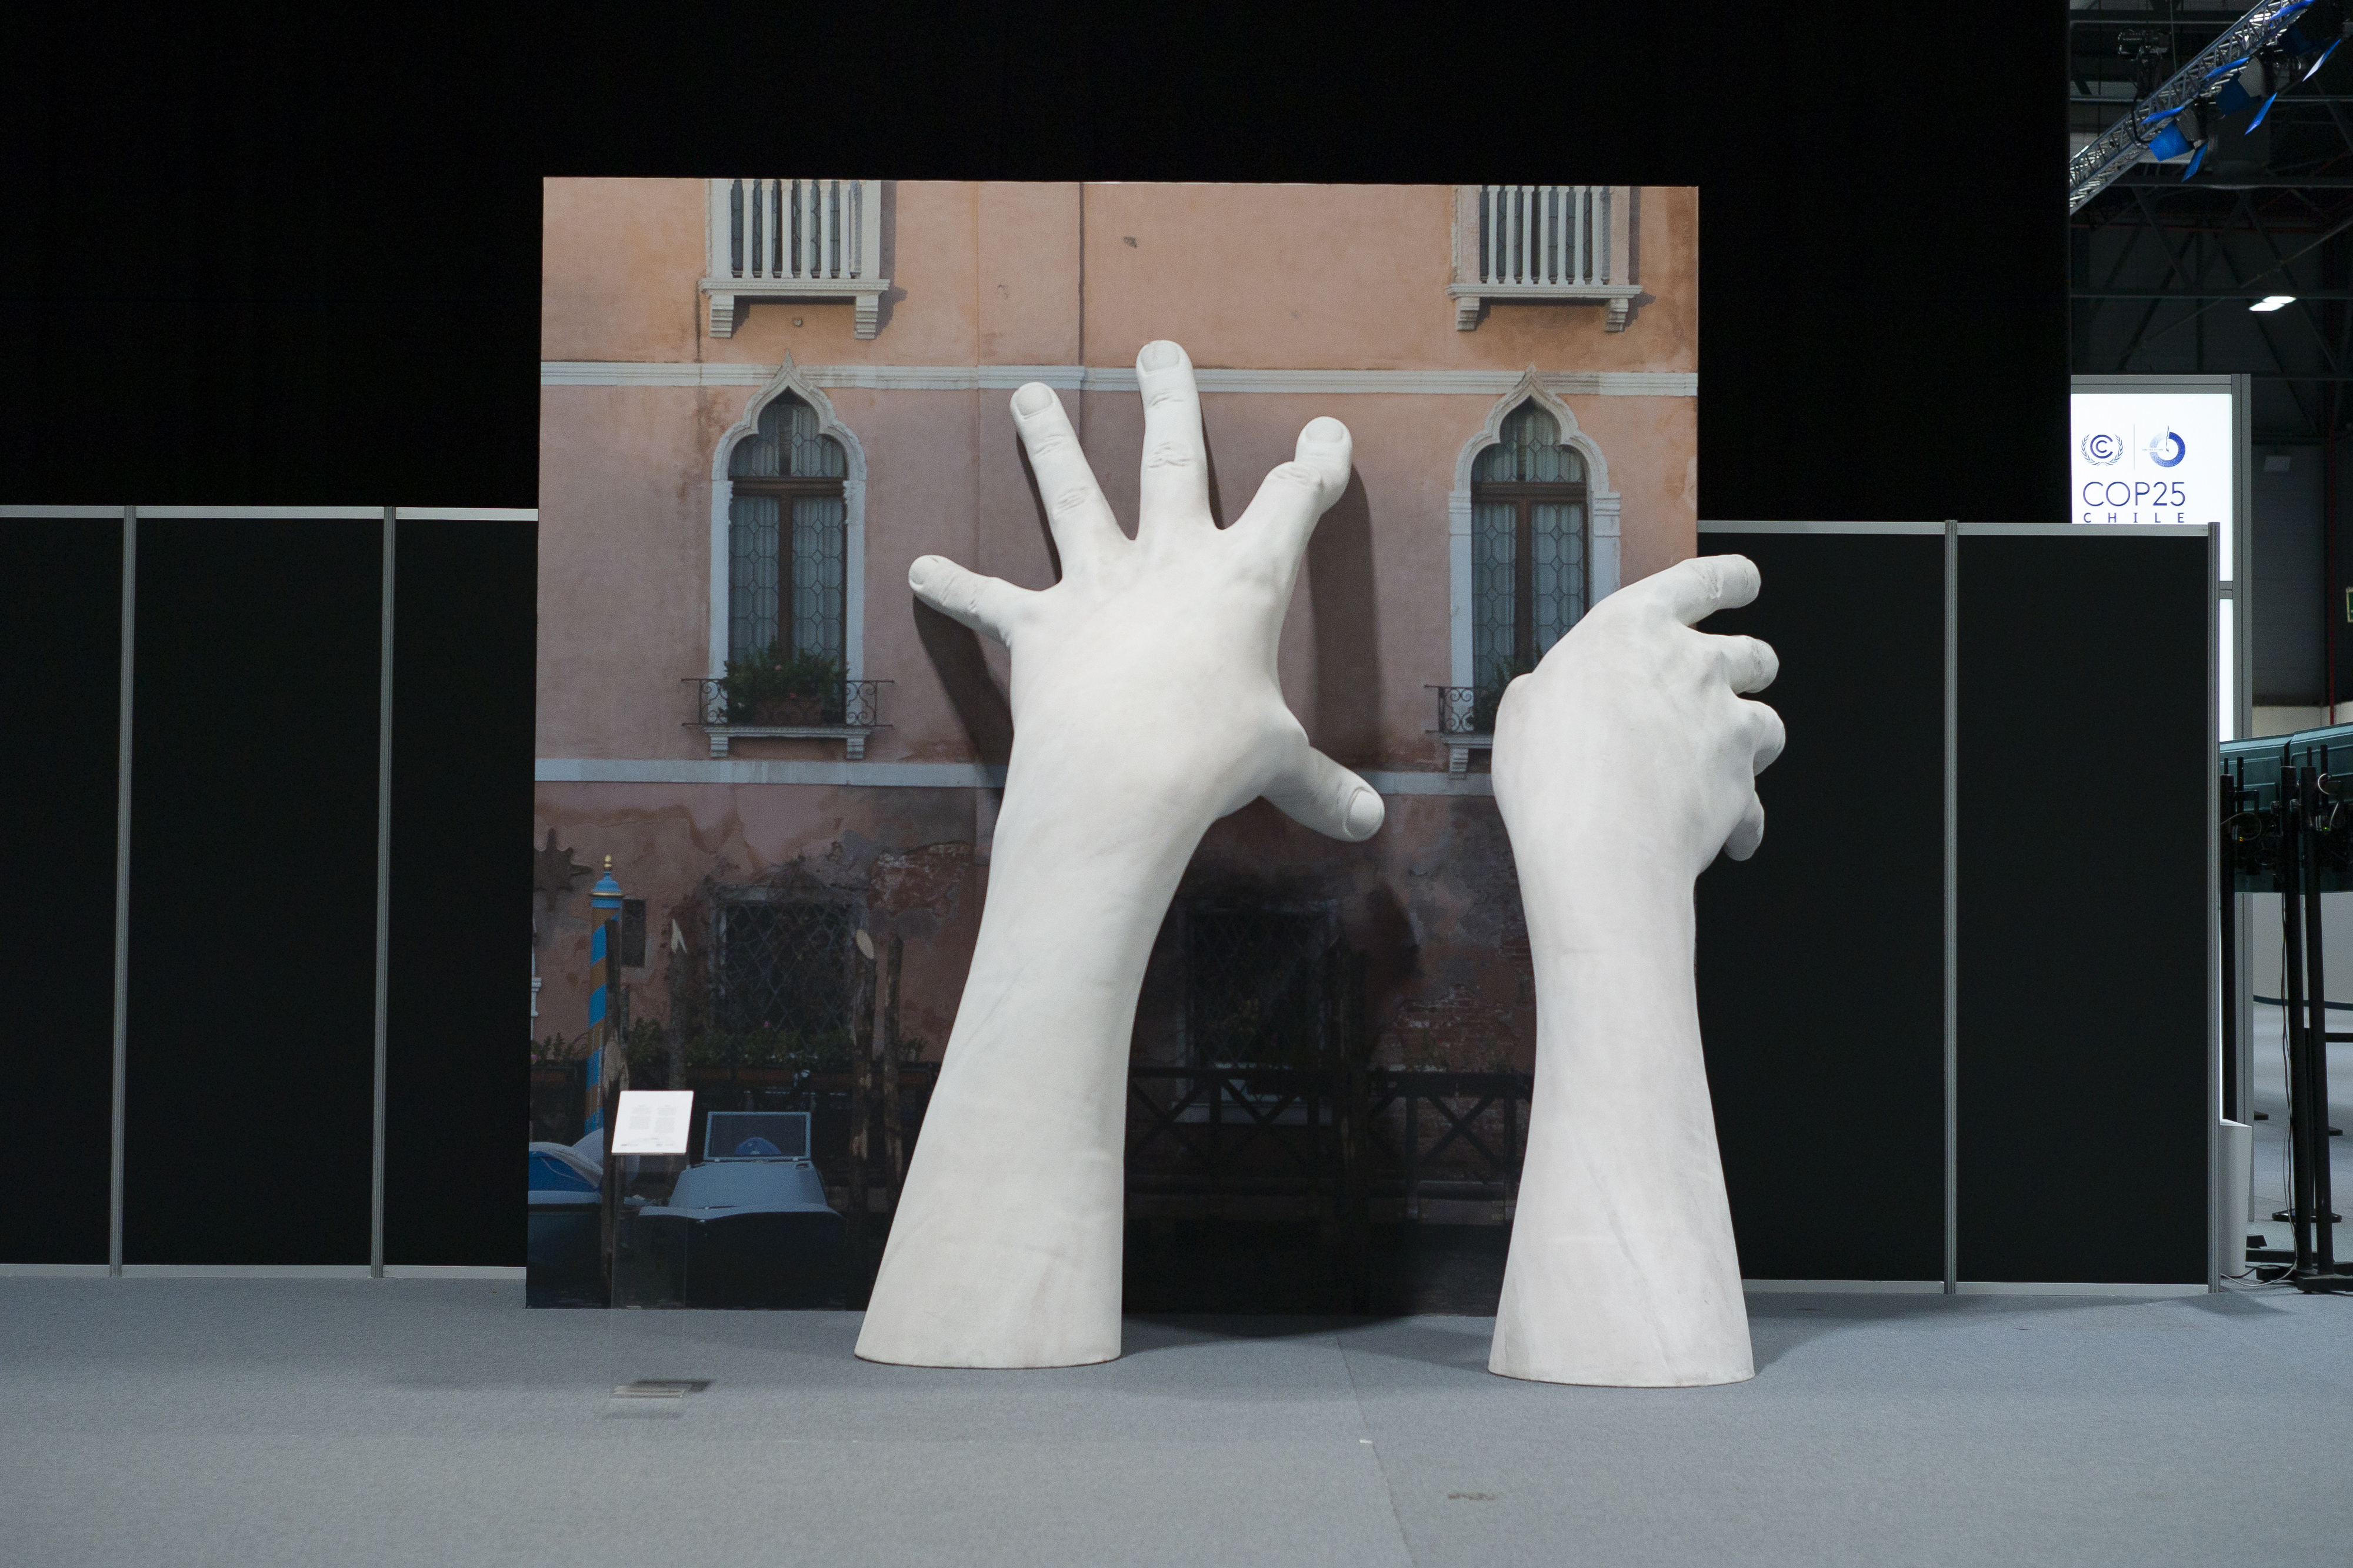 Az elárasztott Velencére utaló installáció a COP25 klímacsúcs hétfői megnyitója előtt